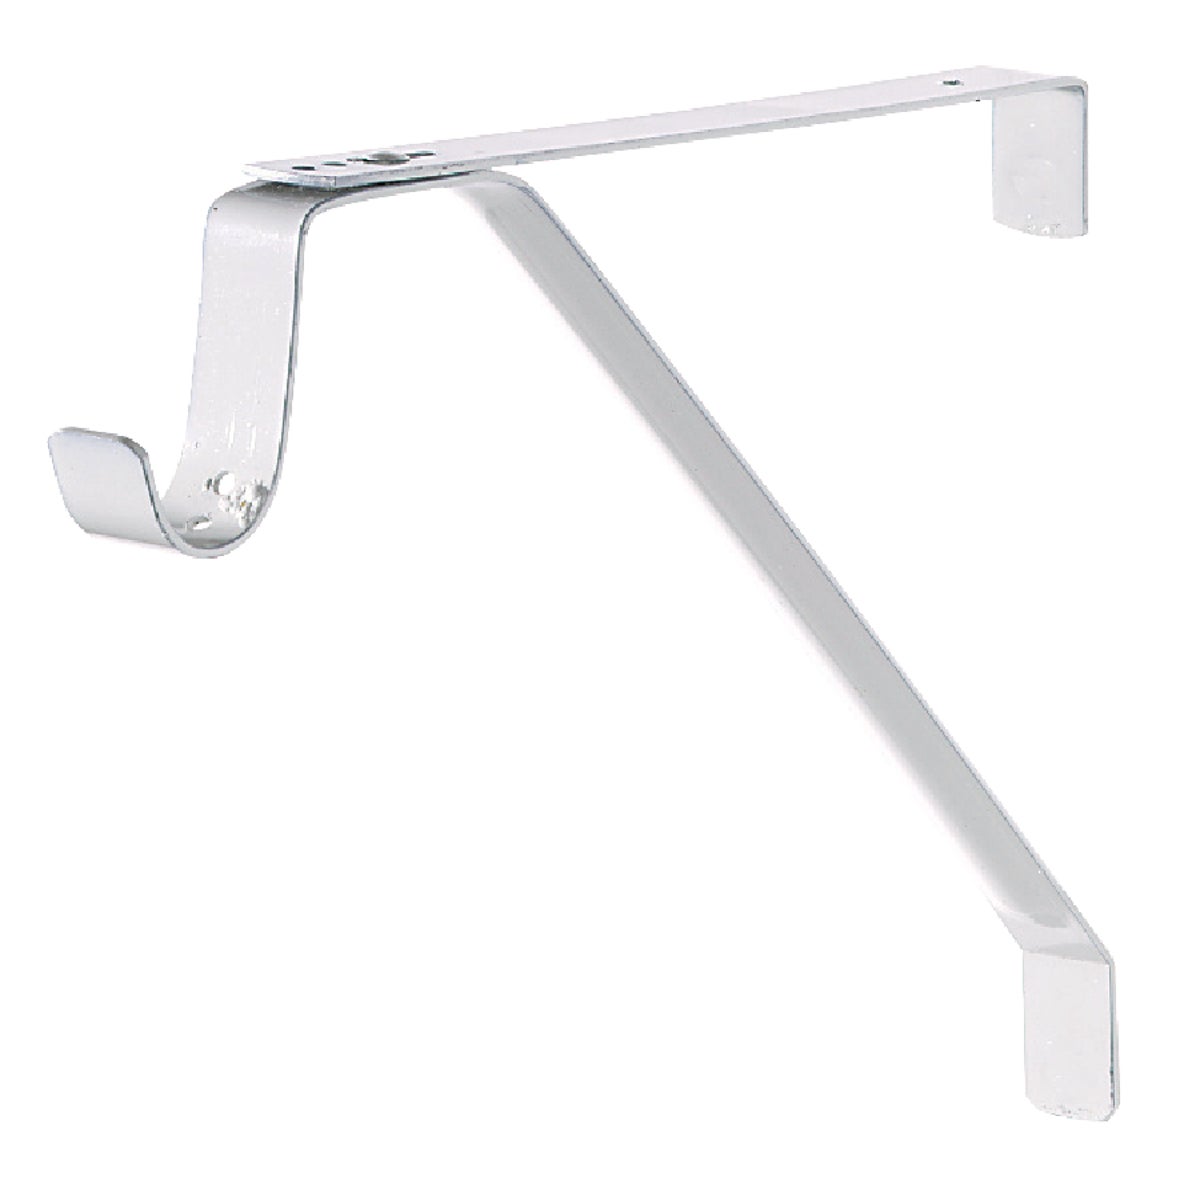 Item 237922, Slide adjustable shelf and rod bracket is ideal for shelves 11 In.